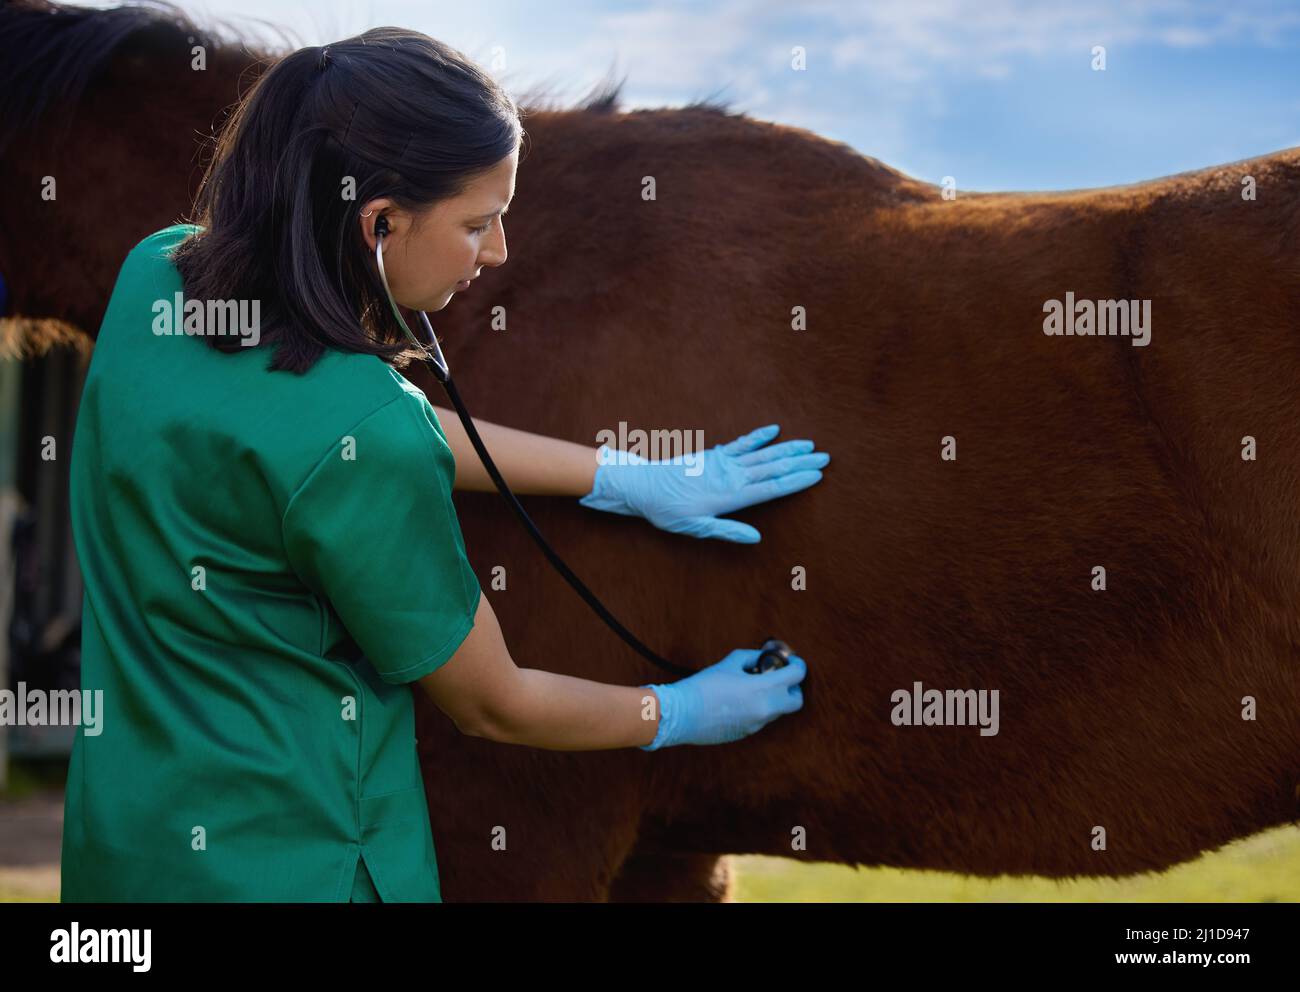 Tierärzte gelten seit langem als Hüter des Tierschutzes. Aufnahme eines jungen Tierarztes, der eine Untersuchung auf einem Pferd auf einer Farm macht. Stockfoto